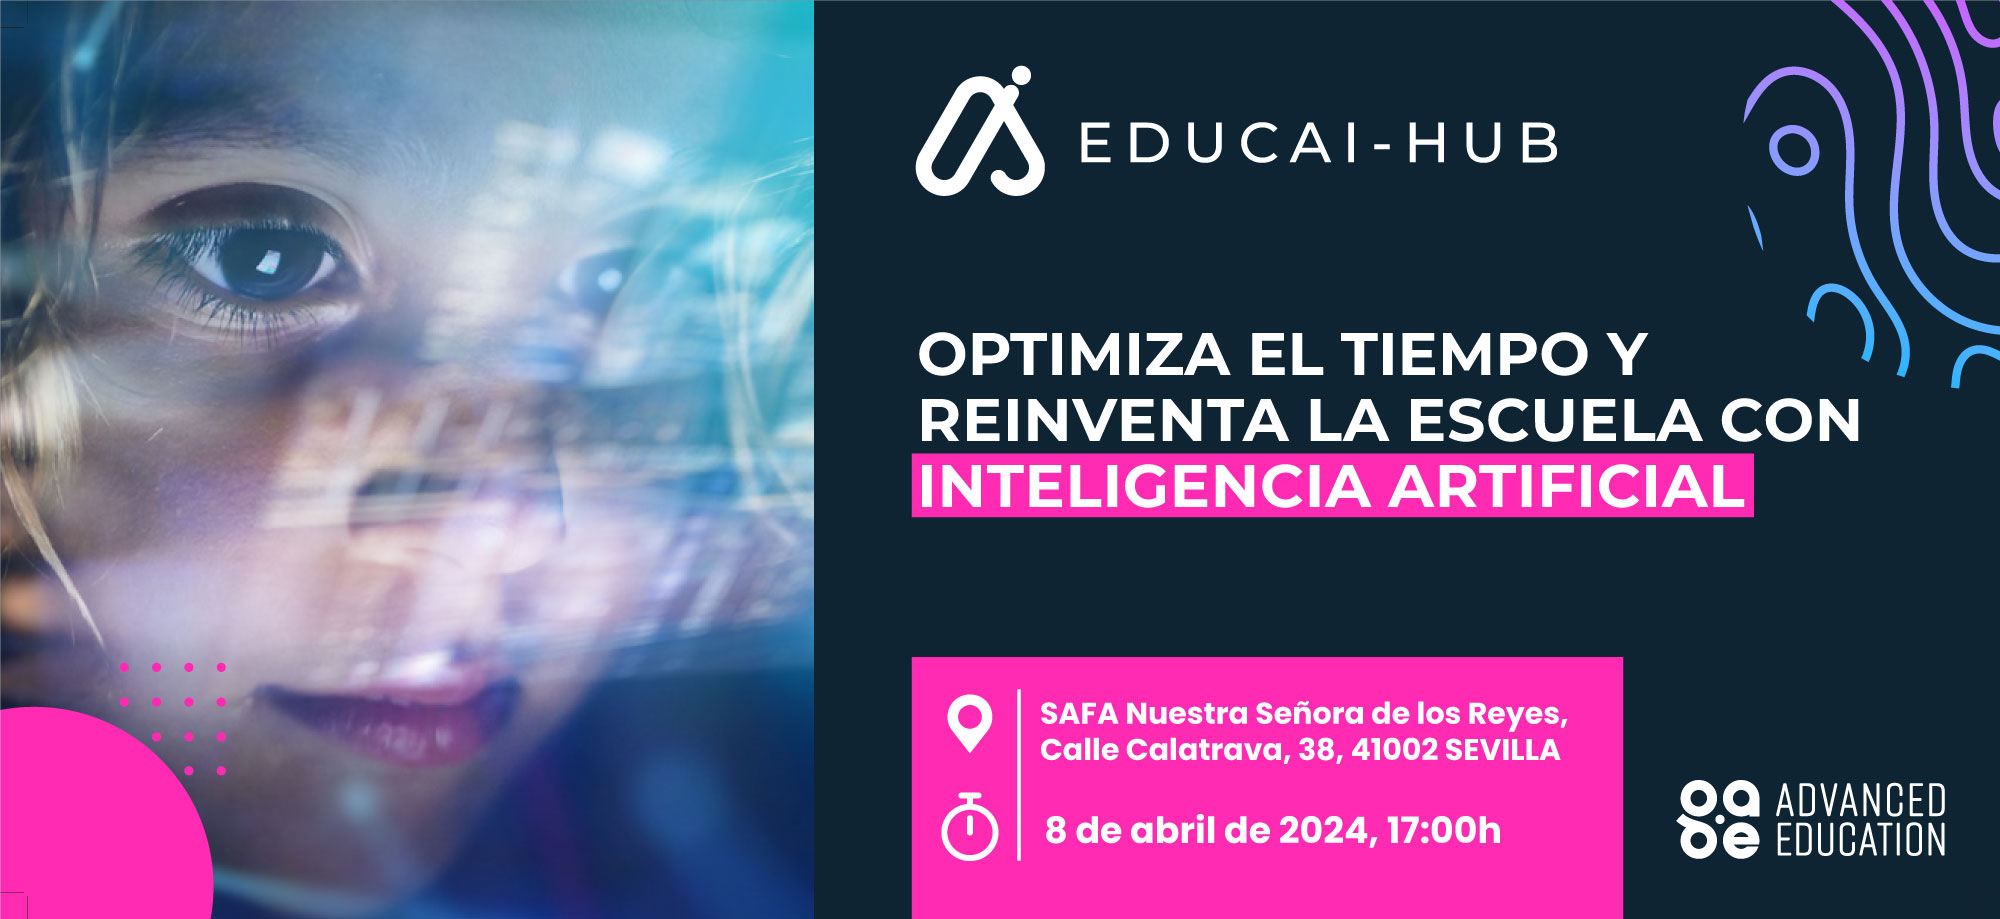 Evento EDUCAI-HUB: La Inteligencia Artificial como herramienta para la transformación educativa